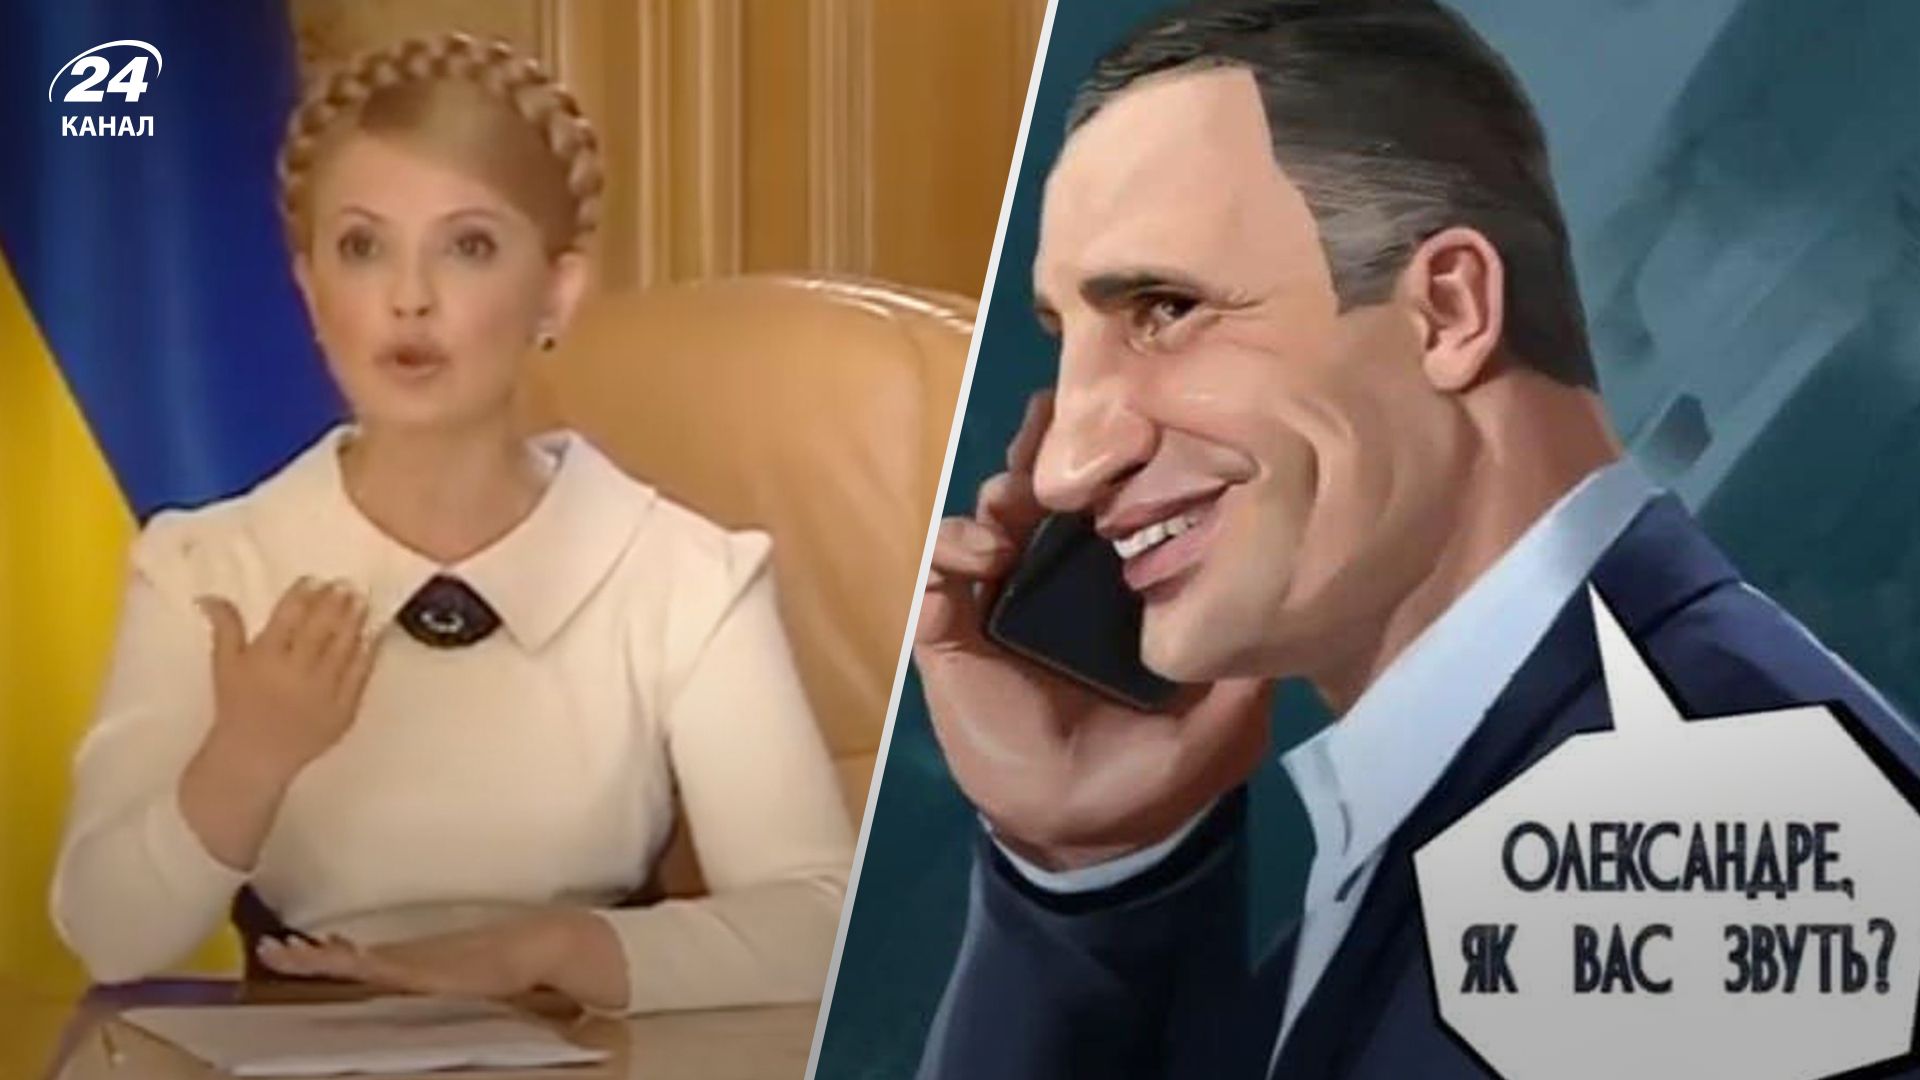 Политические курьезы Украины - подборка лучших мемов - Развлечения 24